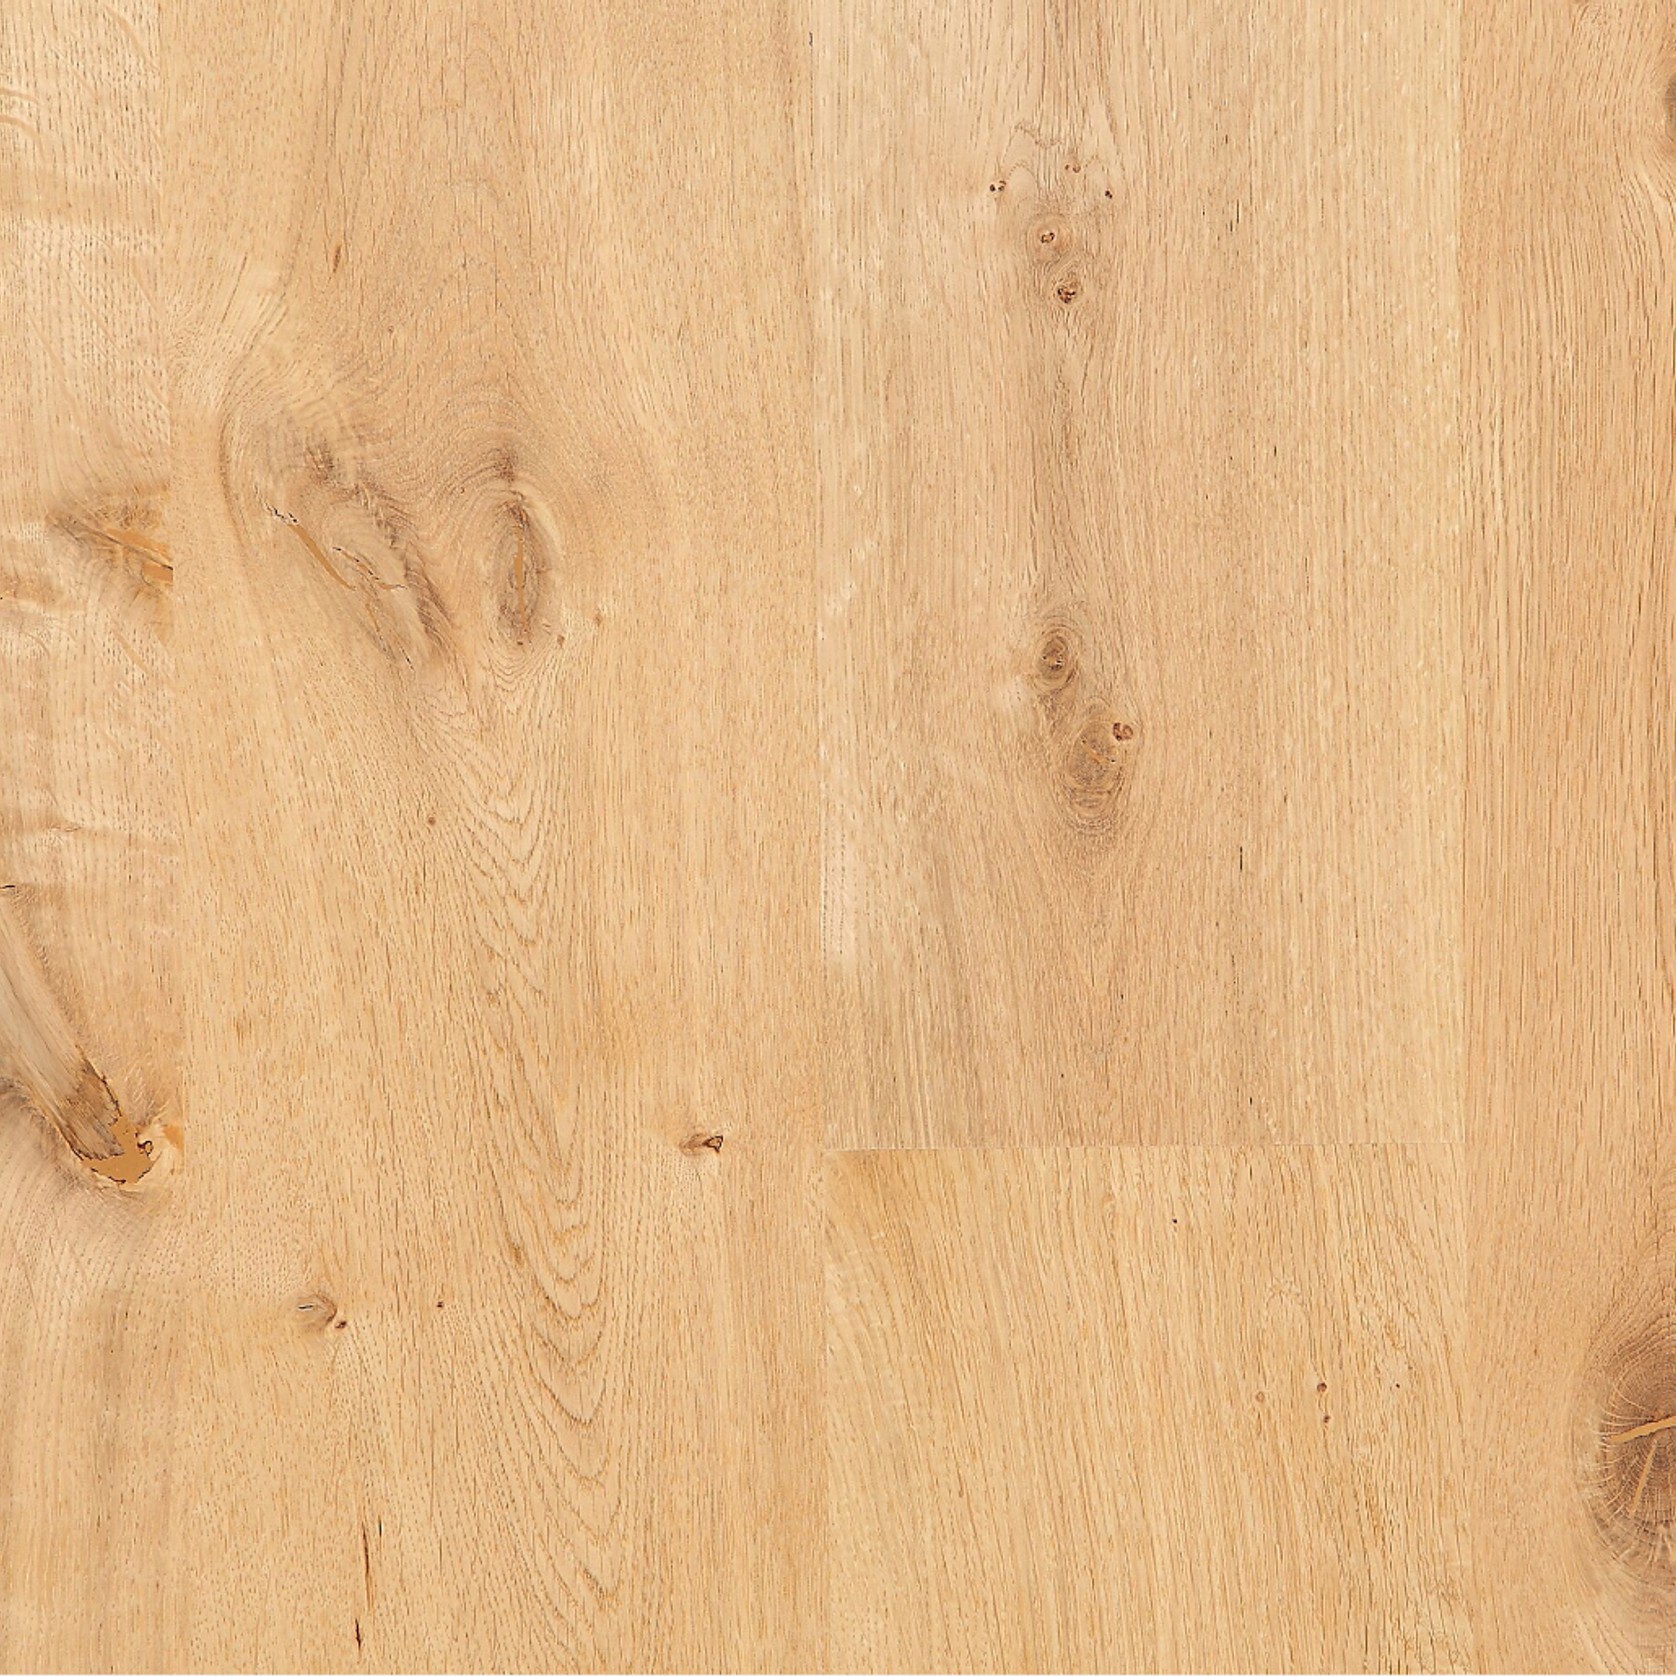 EuroOak Biscuit engineered Wood Flooring Oiled gallery detail image